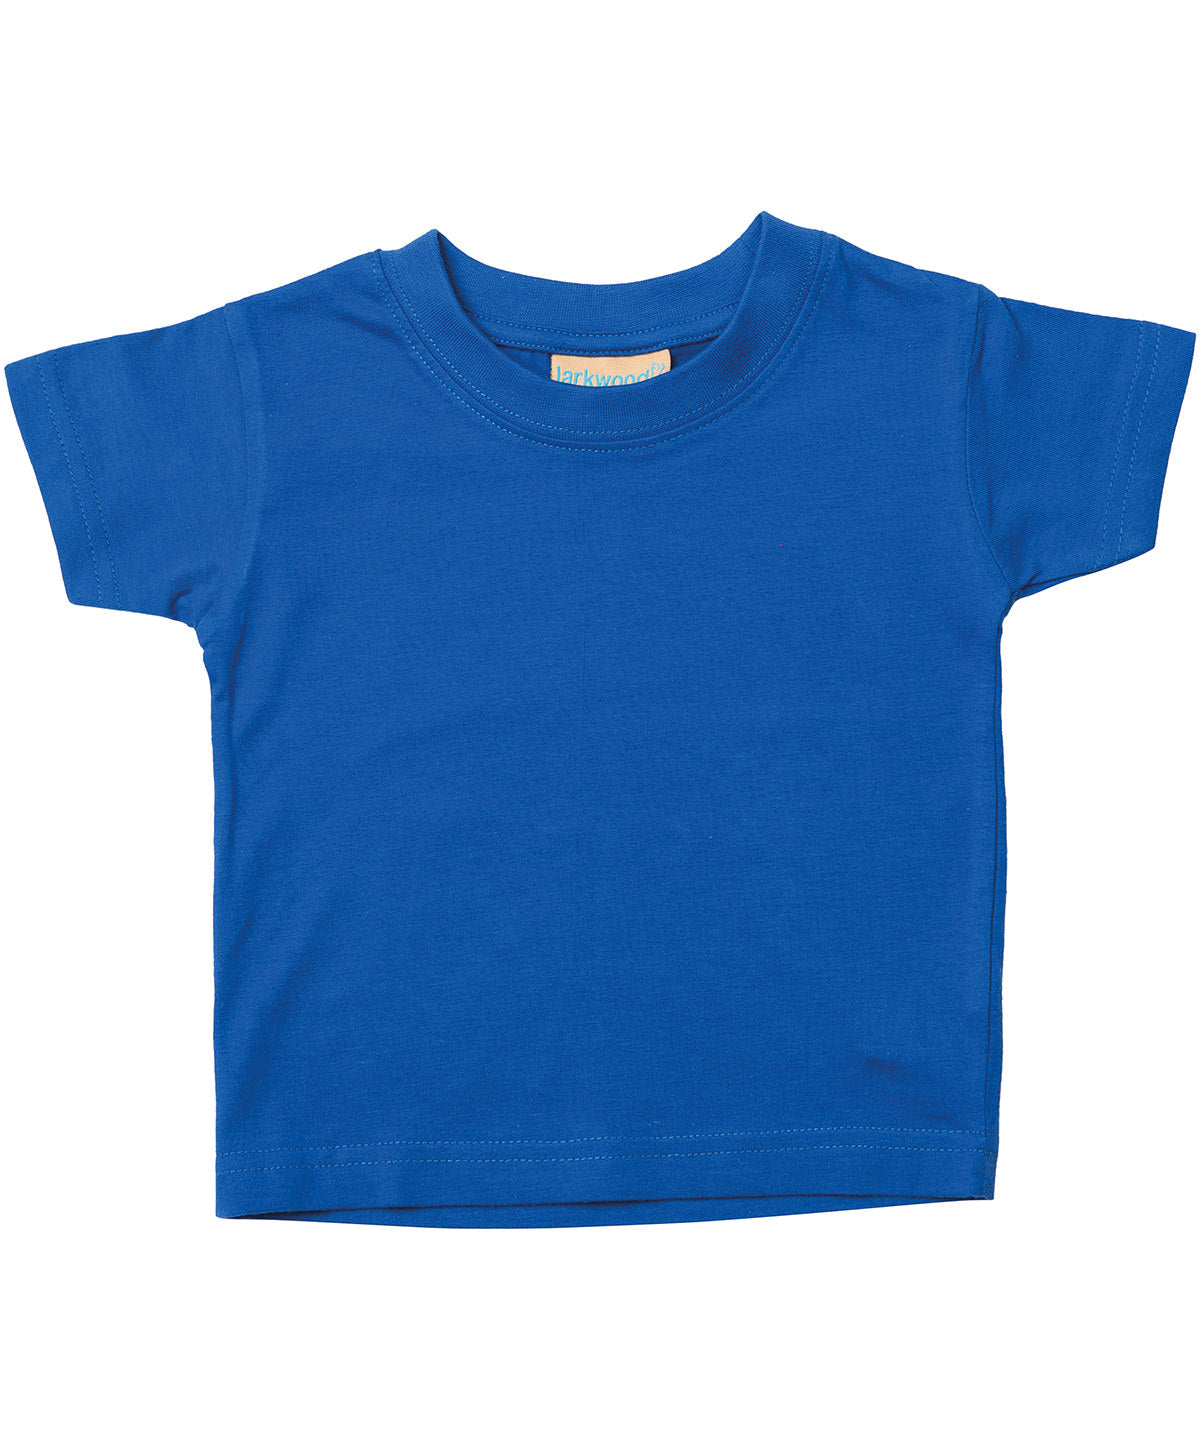 Personalised T-Shirts - Fuchsia Larkwood Baby/toddler t-shirt